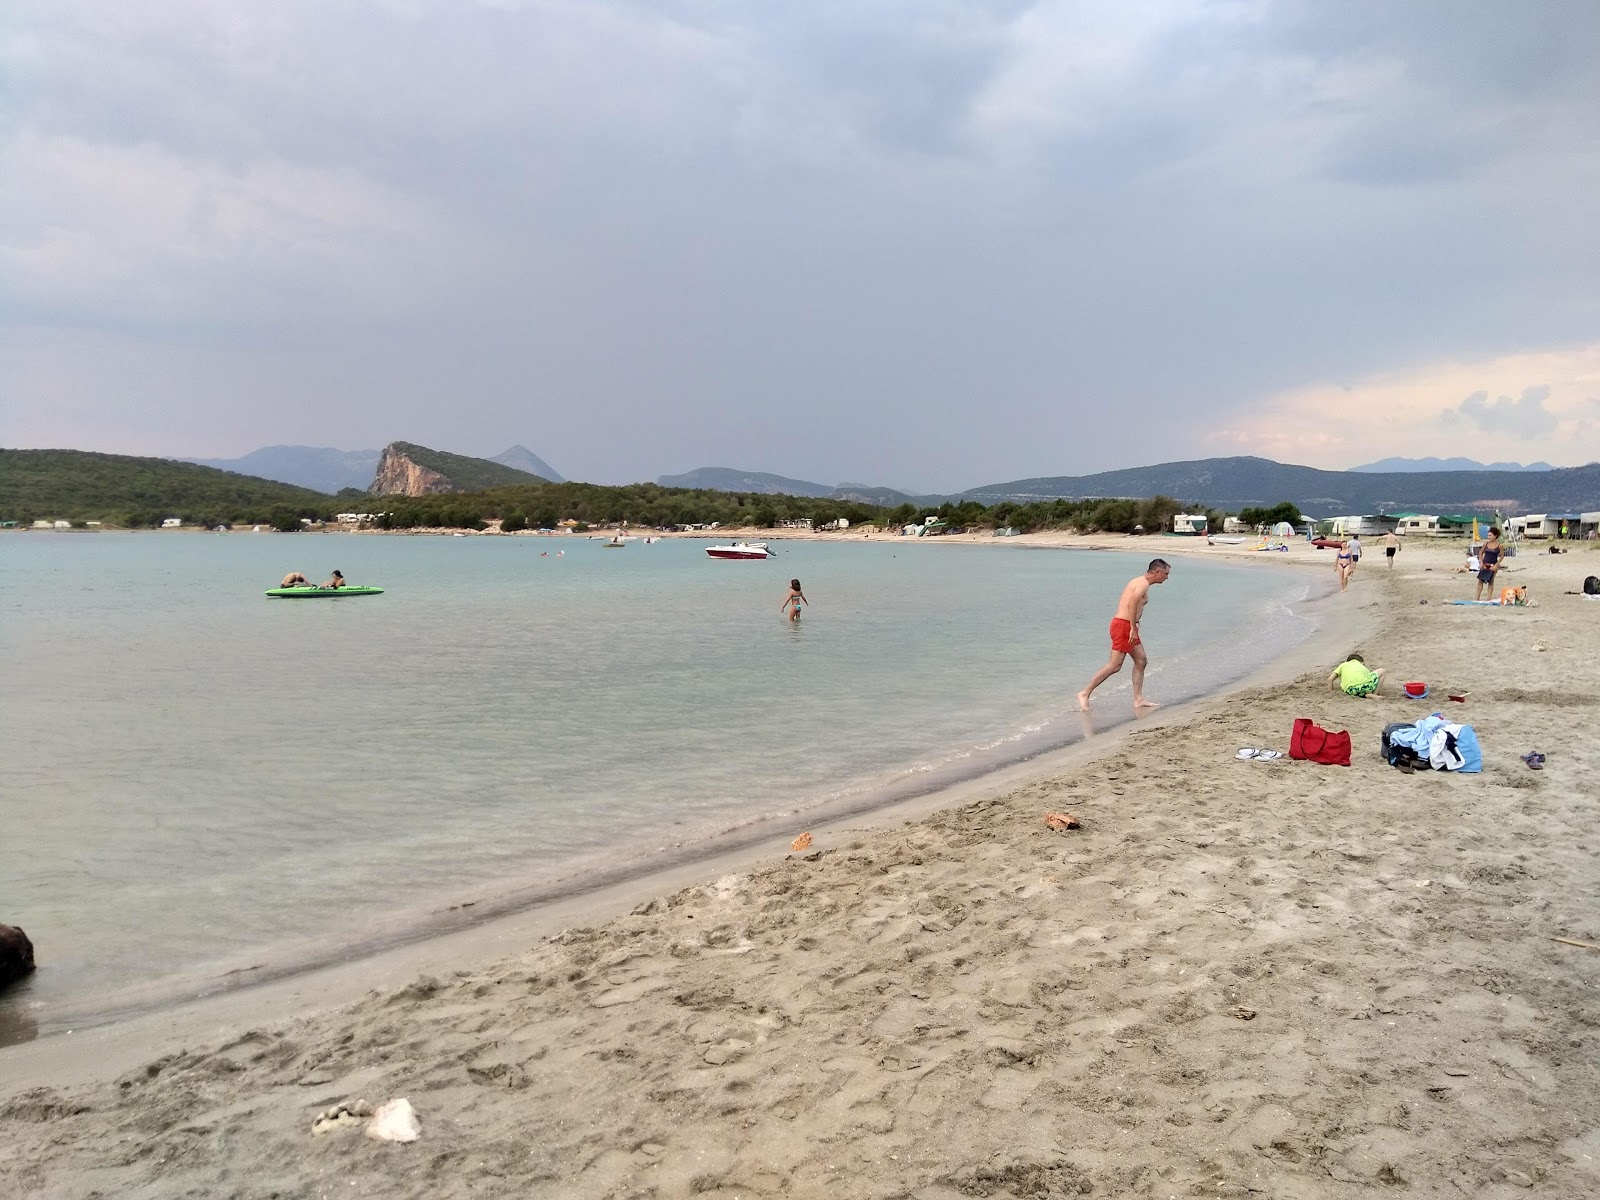 Zdjęcie Kerentza beach - popularne miejsce wśród znawców relaksu